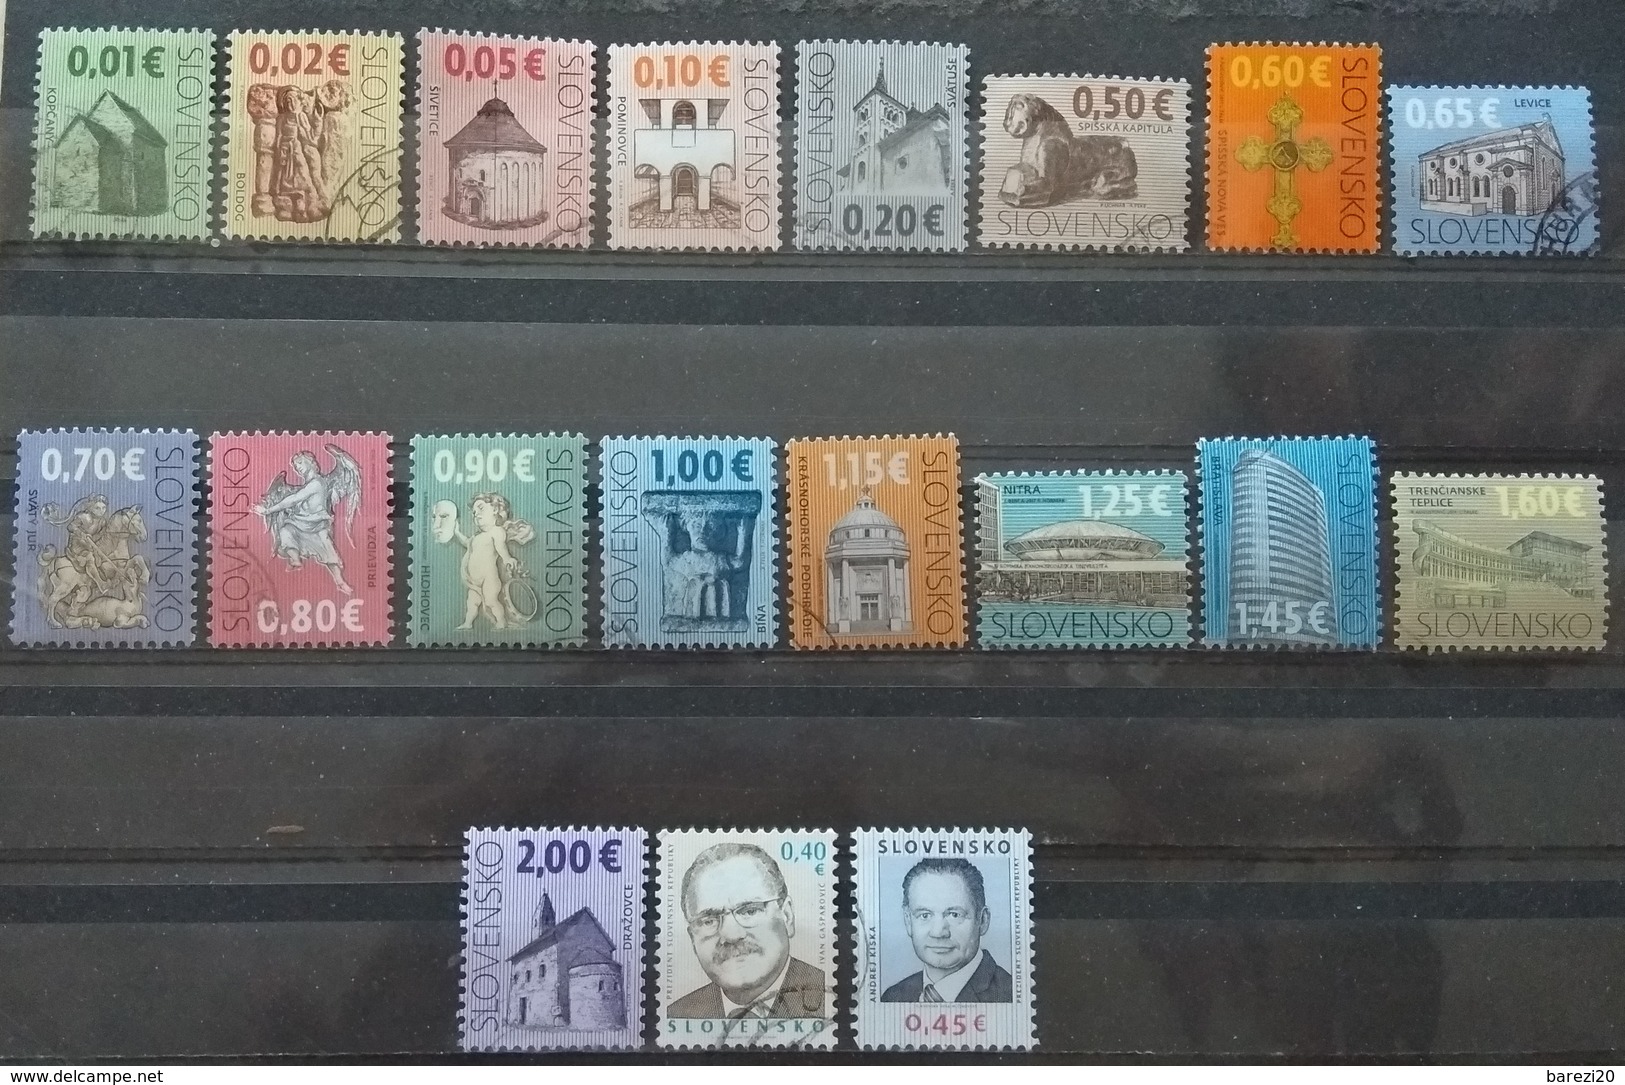 120 used postage stamps Slovakia